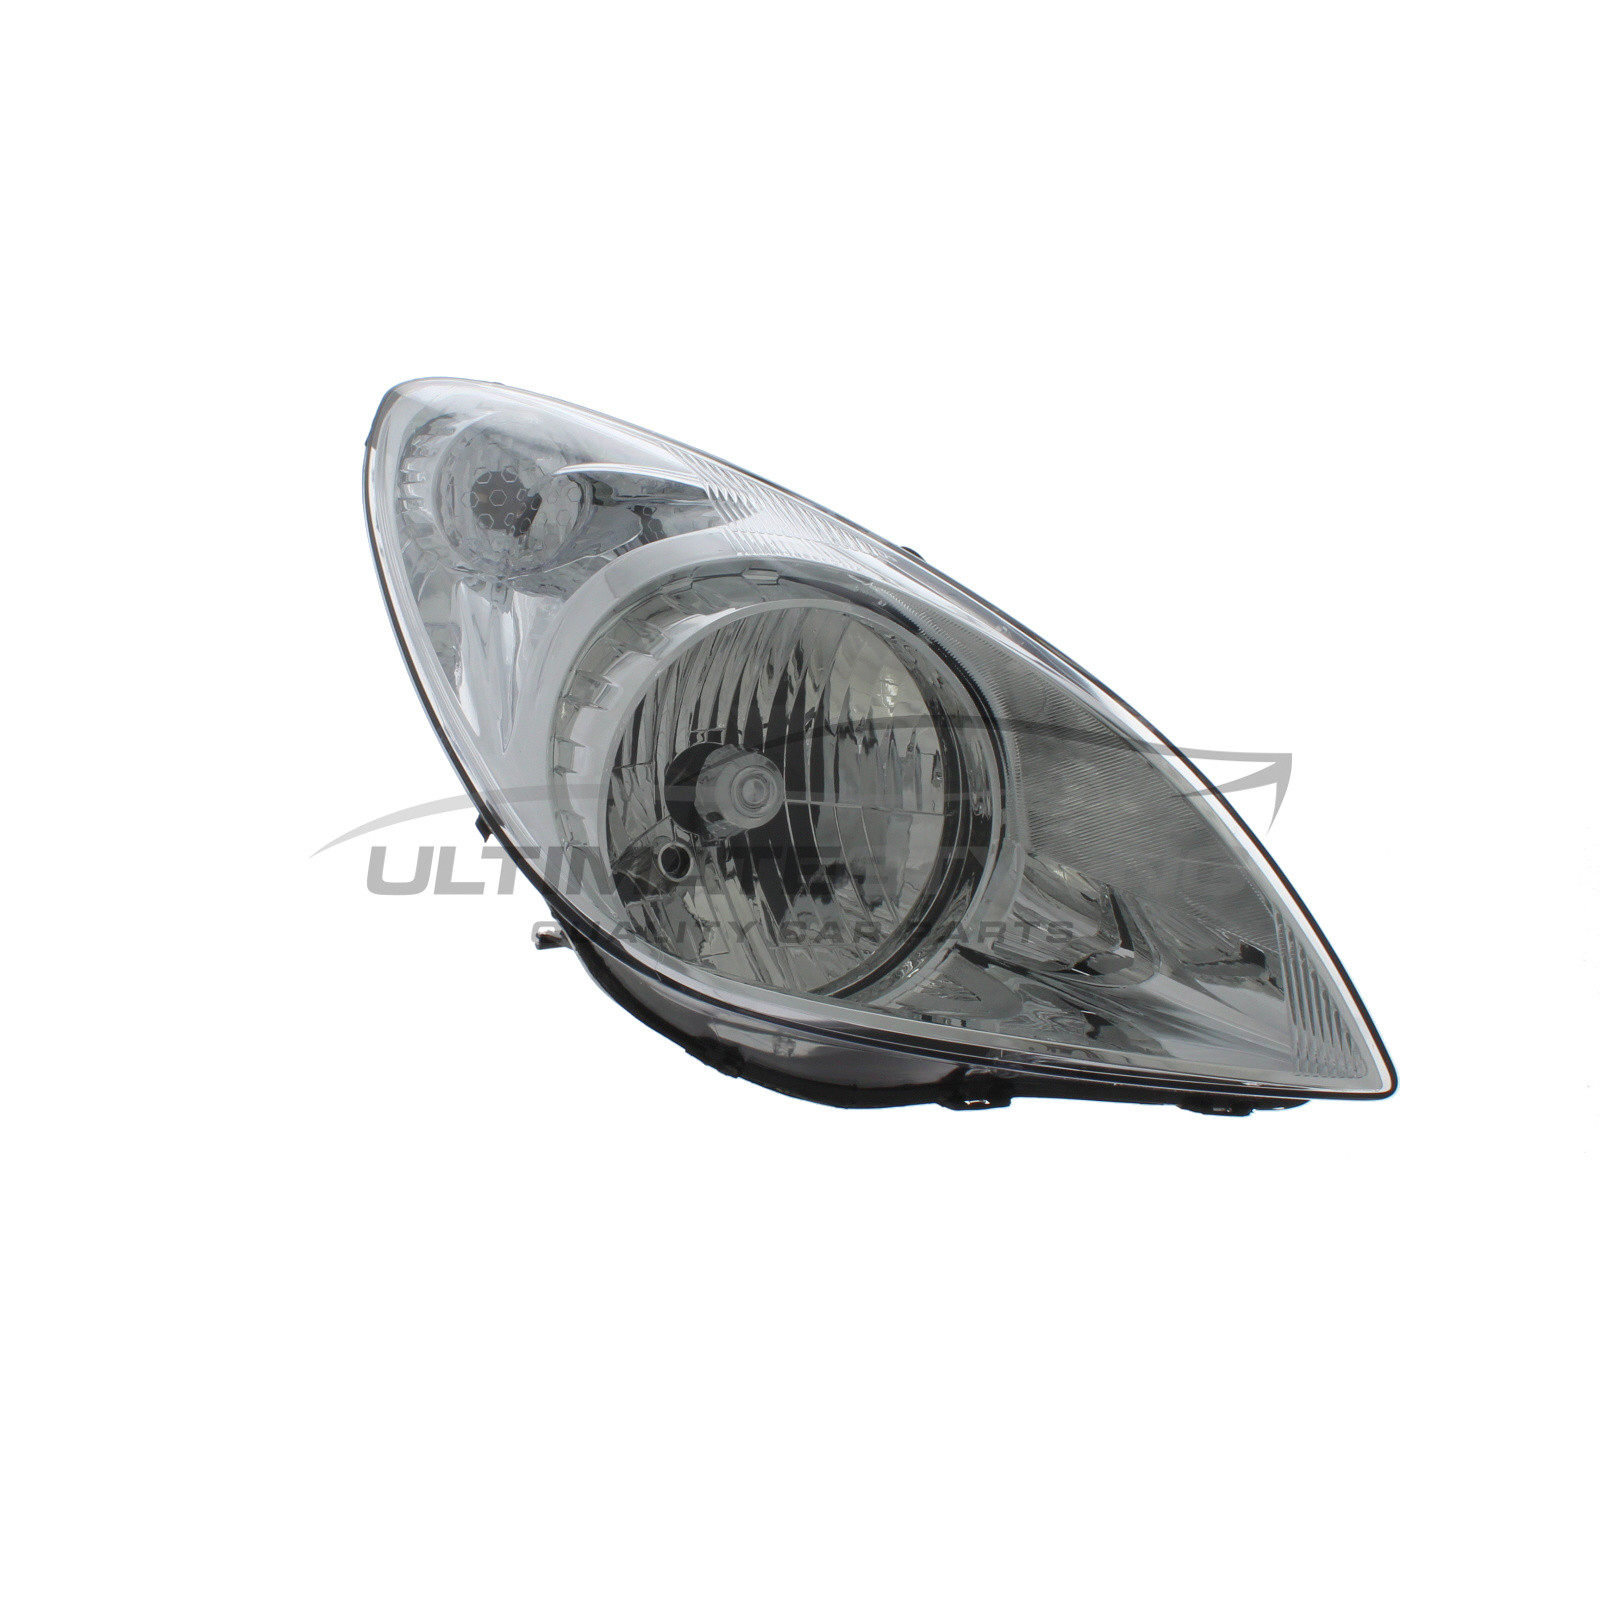 Headlight / Headlamp for Hyundai i20